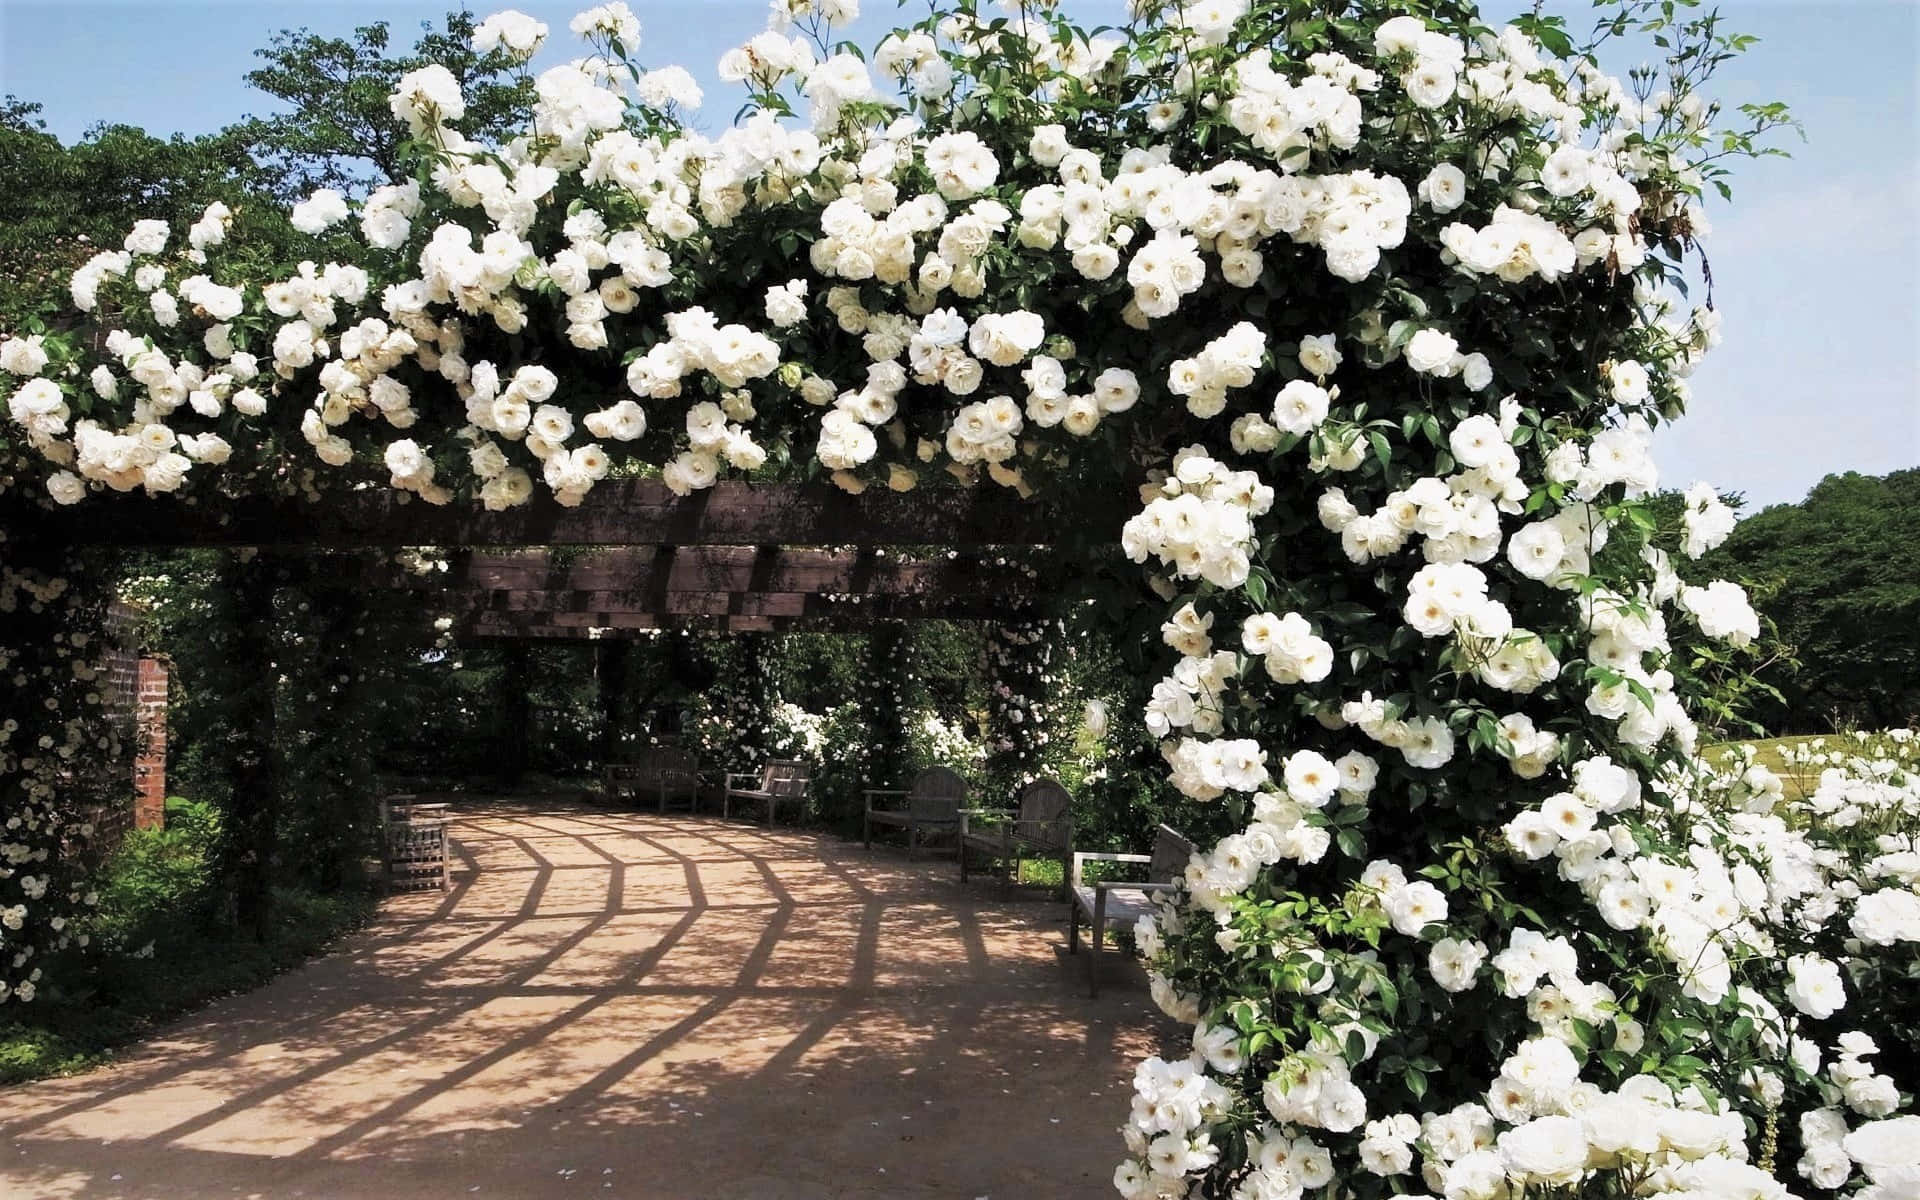 Admiring a Breathtaking Rose Garden